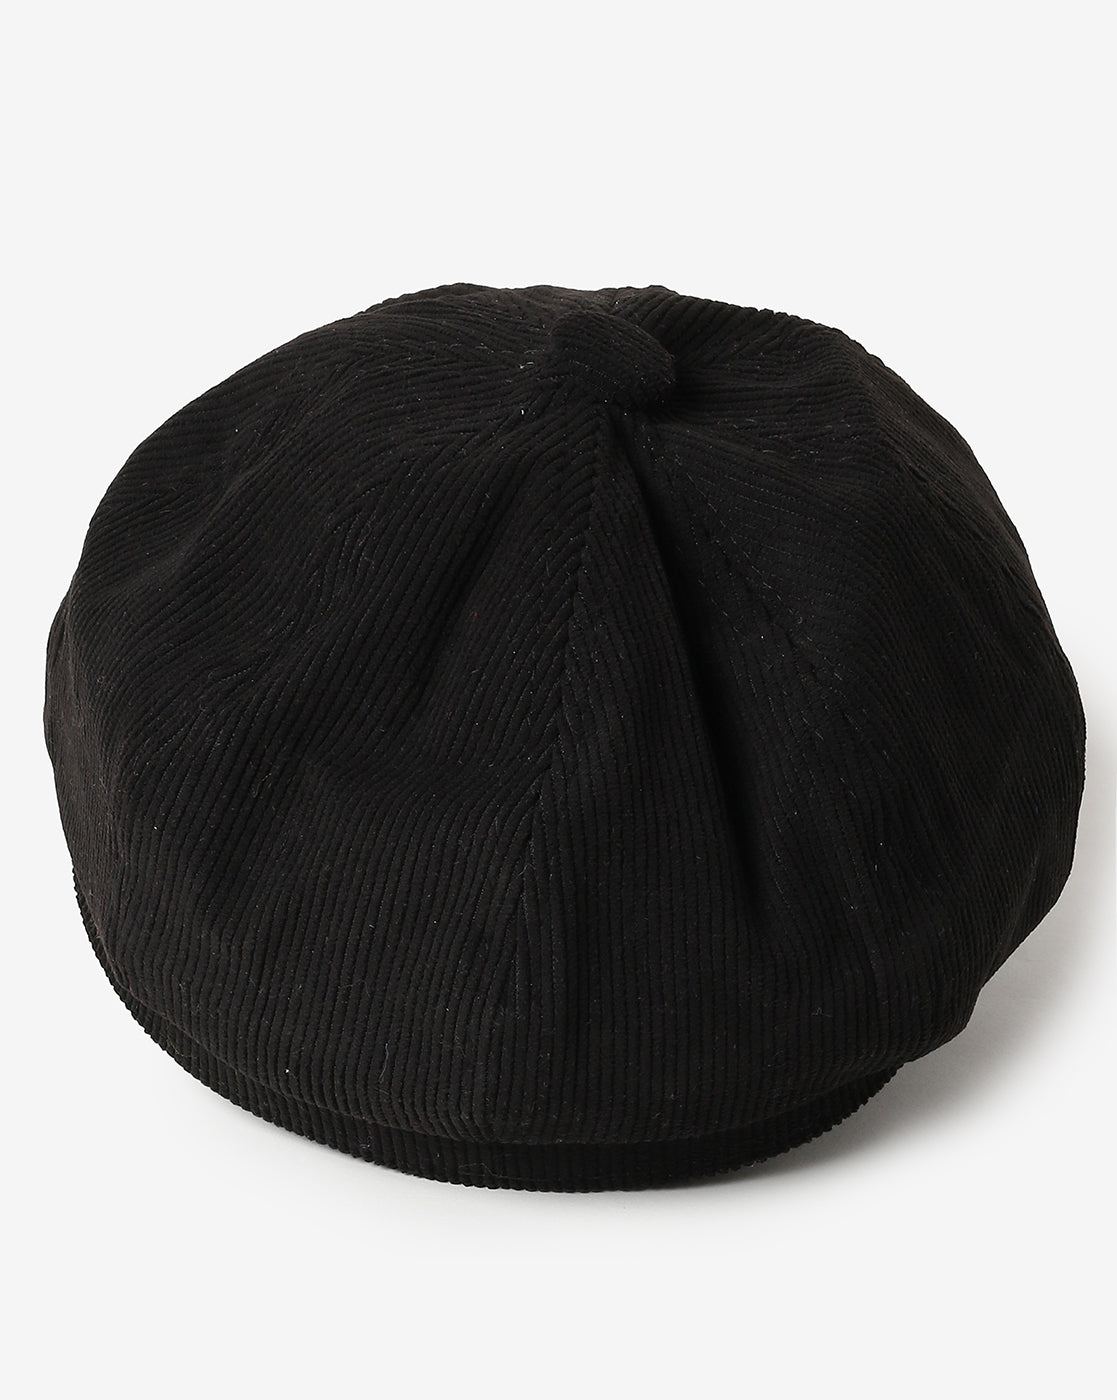 WOMEN BLACK VINTAGE NEWSBOY CAP